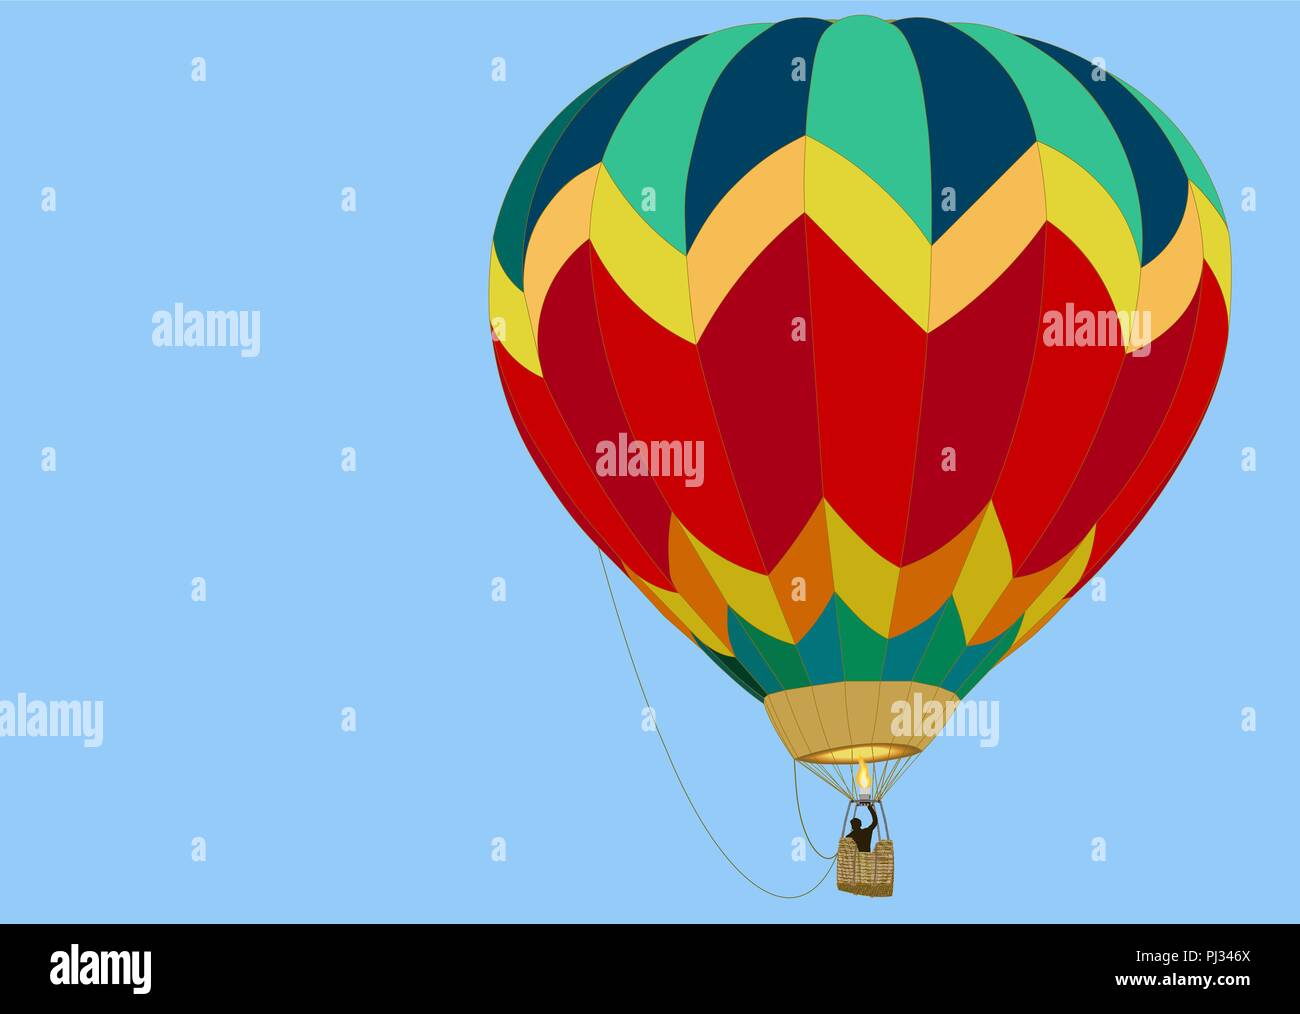 Ballon mit einem Korb und eine Flamme aus einem Brenner, schwebt in einem blauen Himmel Stock Vektor